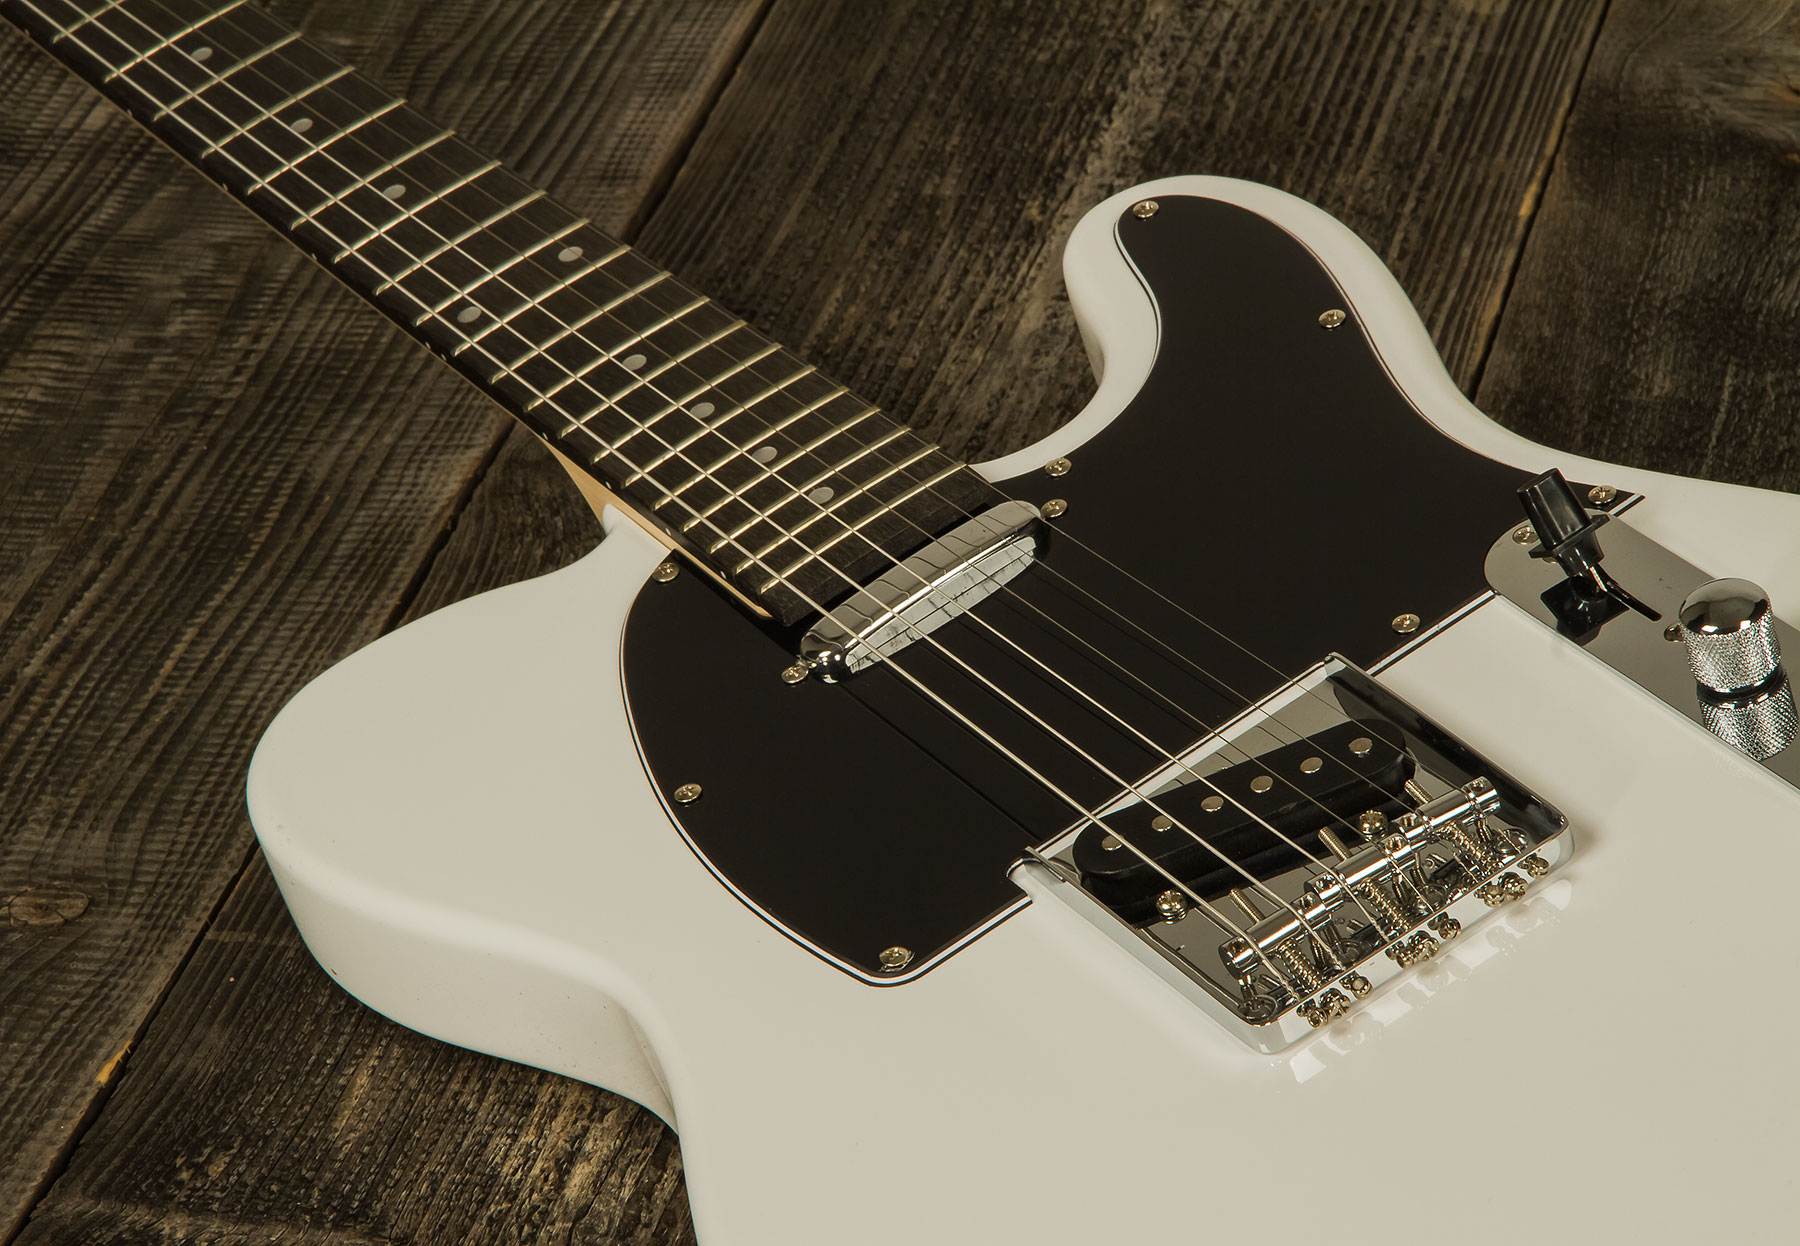 Eastone Tl70 2s Ht Pur - Olympic White - Televorm elektrische gitaar - Variation 3